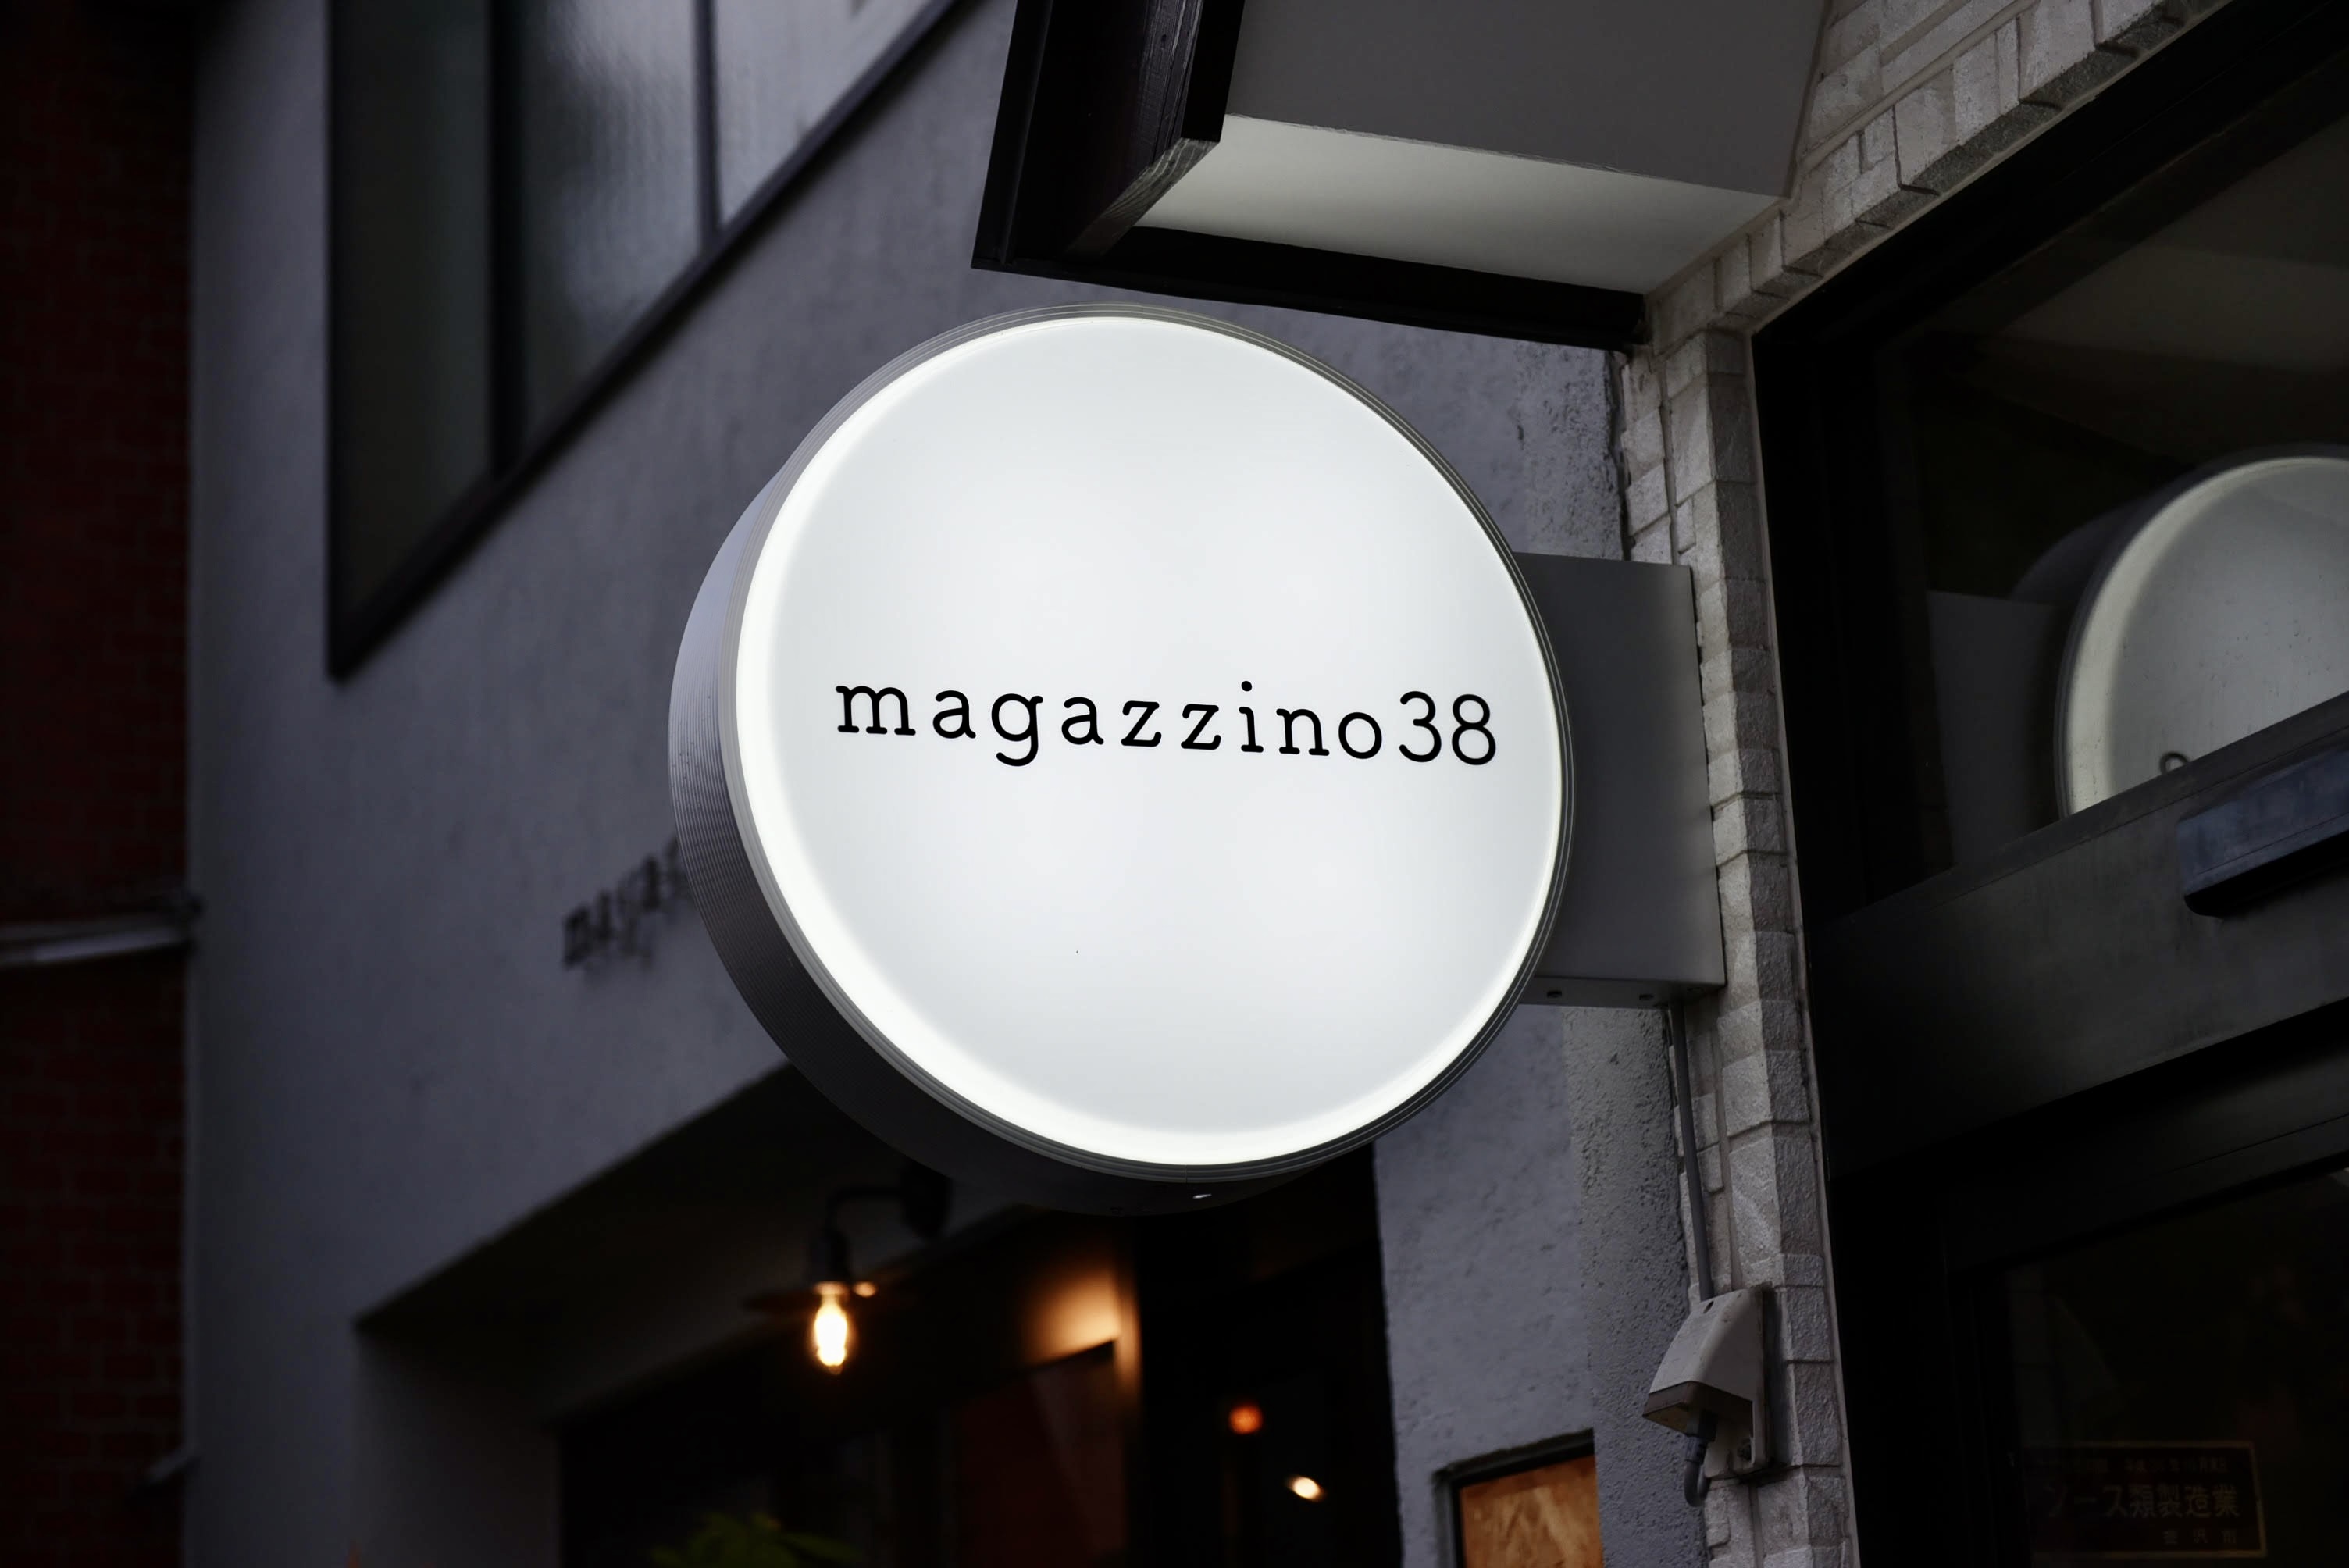 オープン情報 10 22とおりゃんせ卒業生magazzino38がオードブル 高級弁当専門店をオープン とおりゃんせ